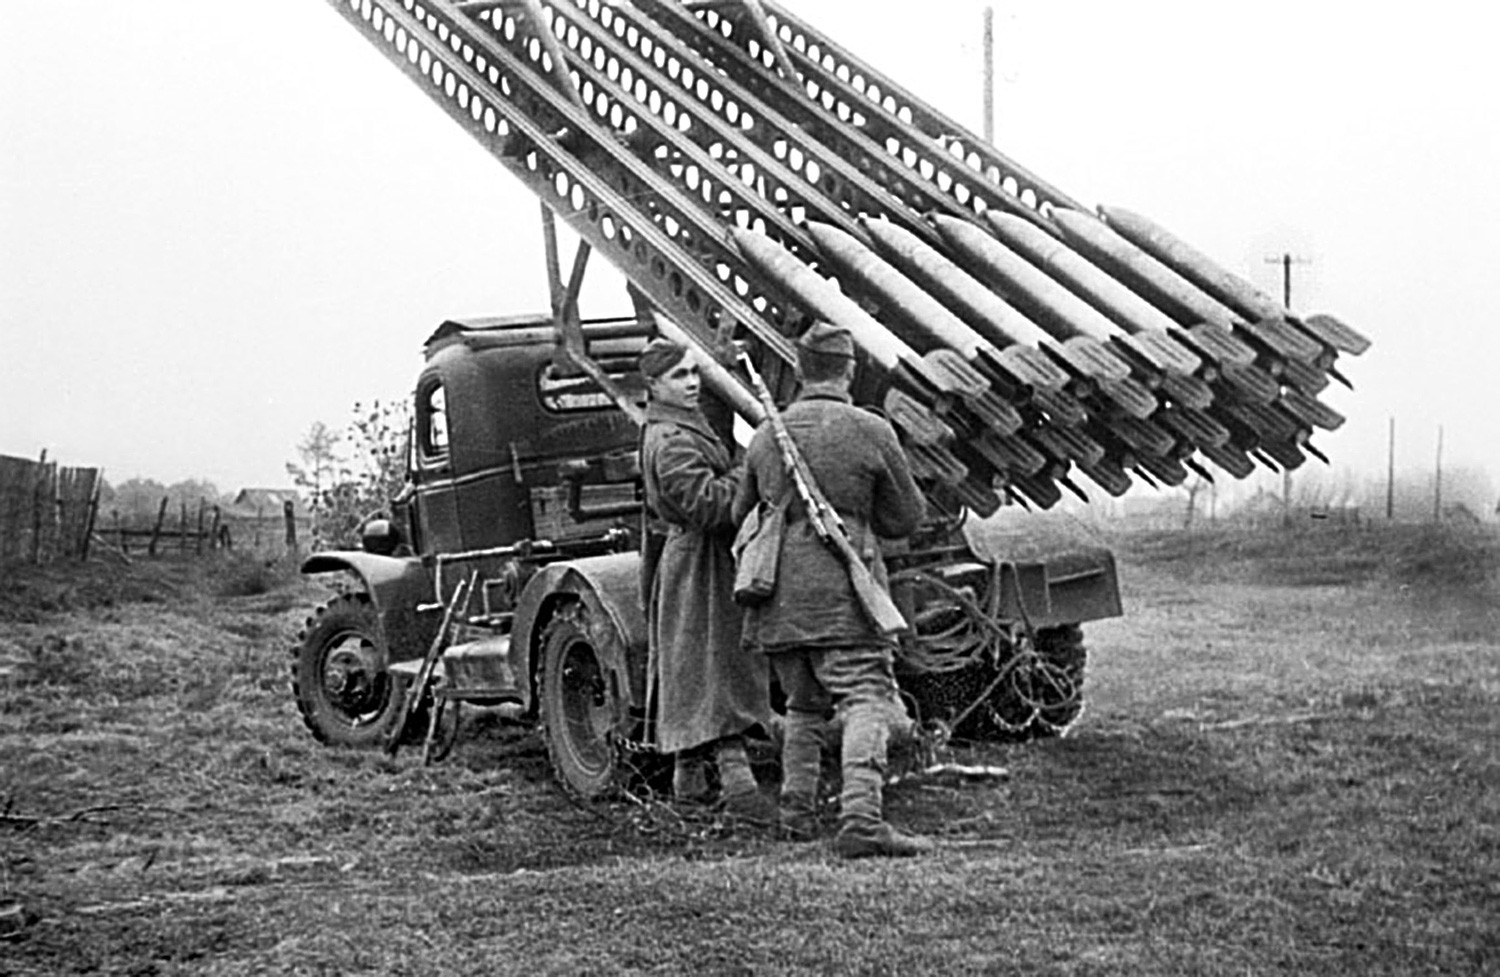 Катюша": 5 факта за най-страшното съветско оръжие от Втората световна война  - Russia Beyond България